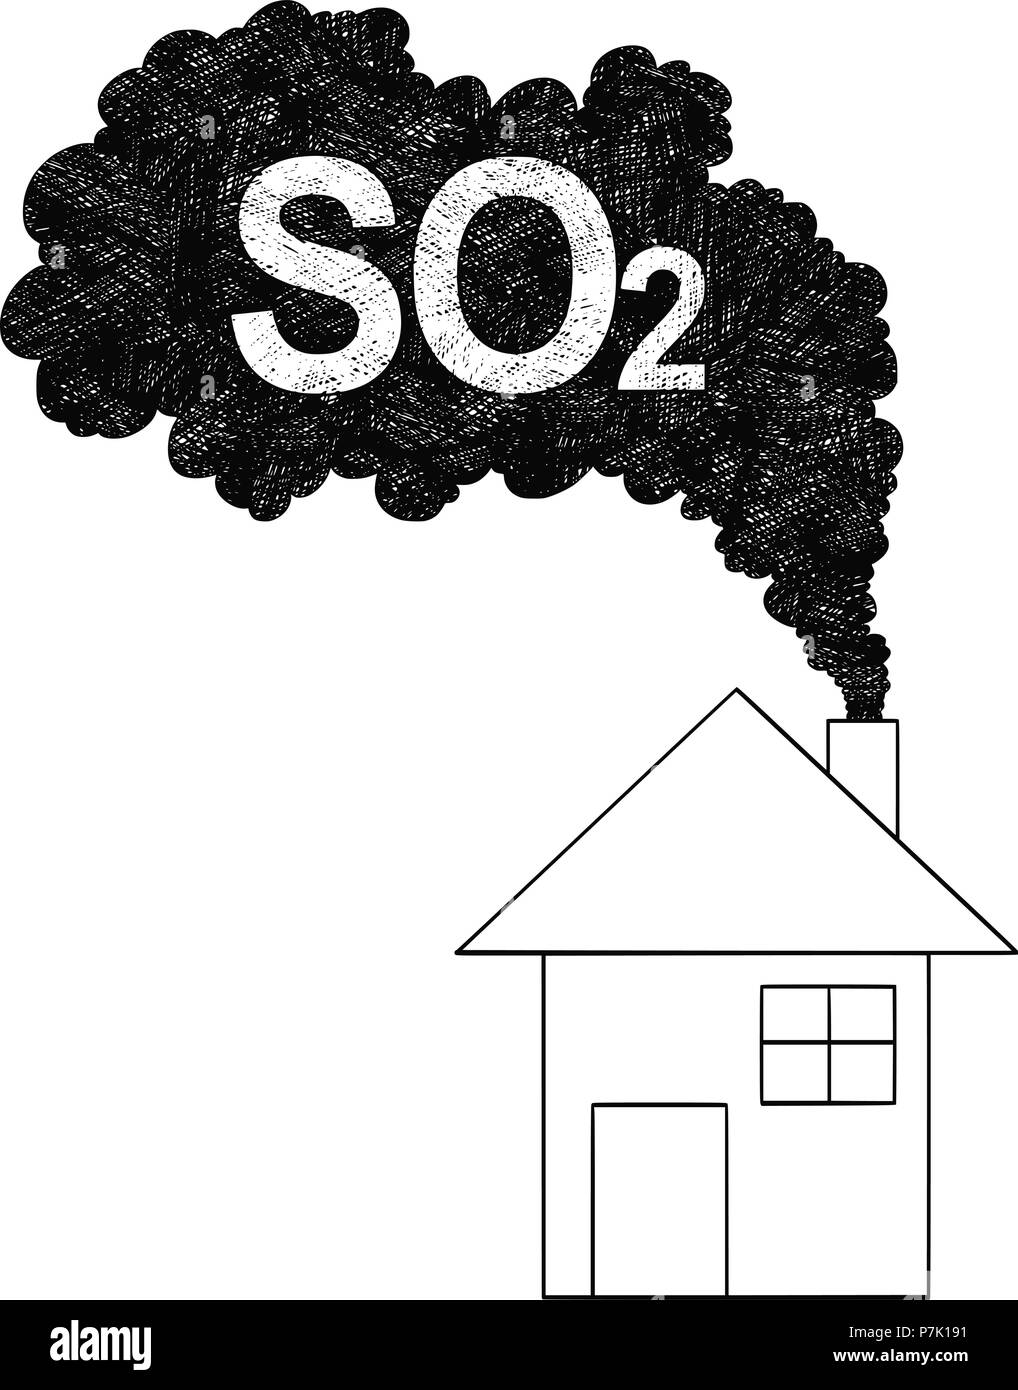 Dessin Artistique vecteur Illustration de fumée à la cheminée de la Chambre, le dioxyde de soufre ou SO2 La pollution de l'air Concept Illustration de Vecteur